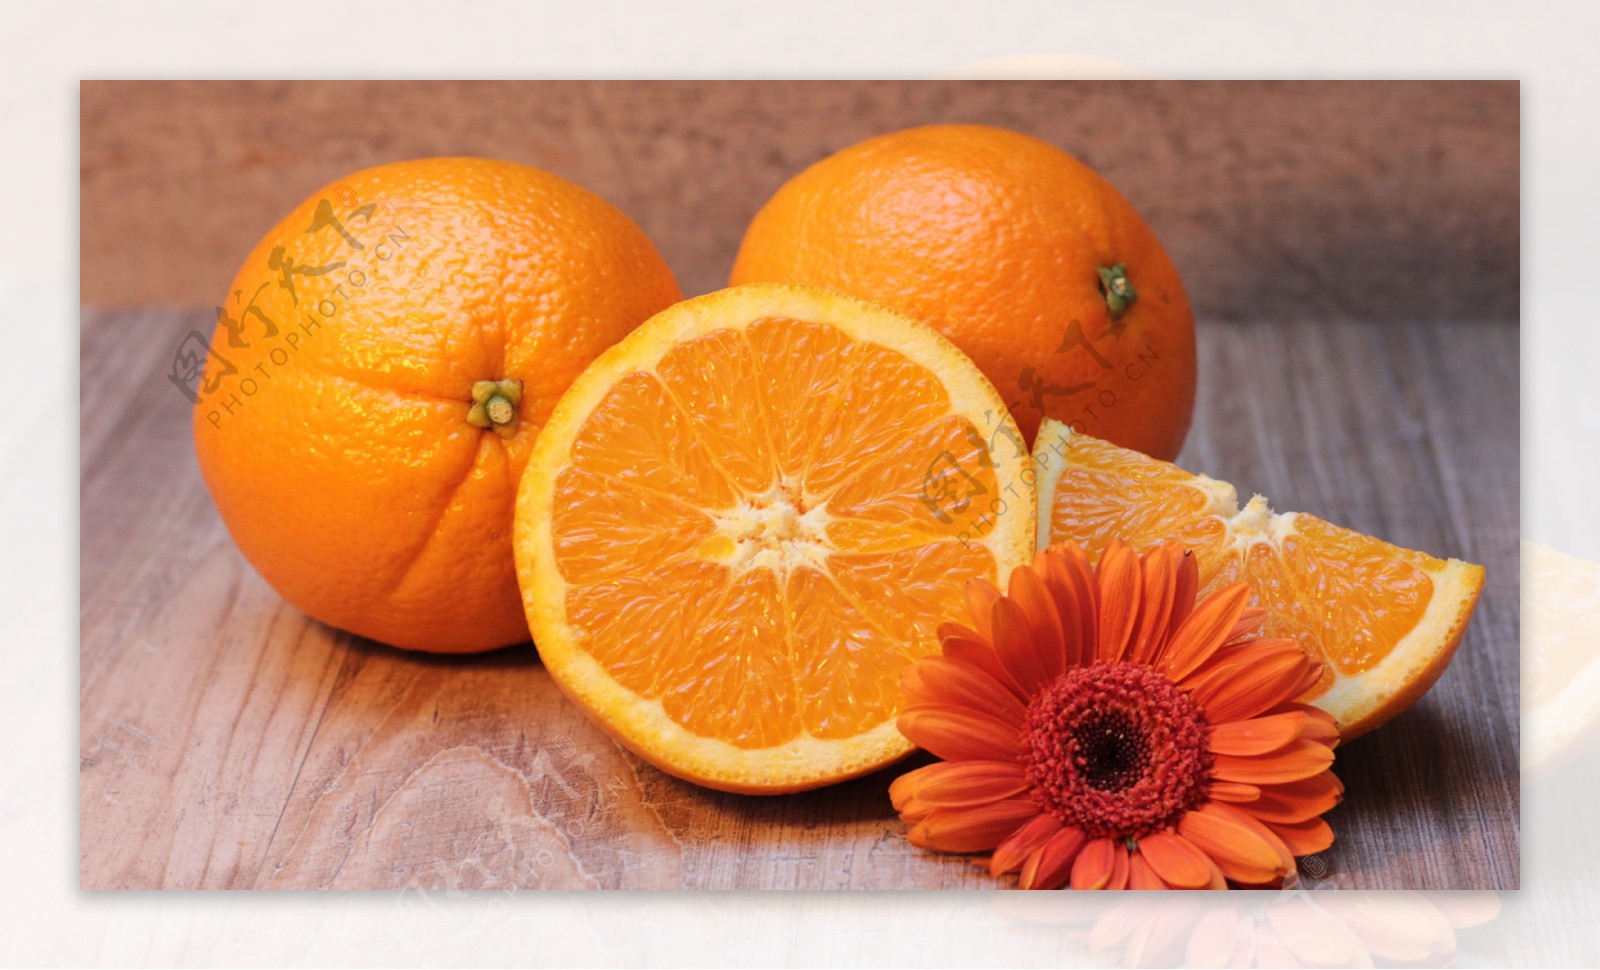 橙子切开的香橙